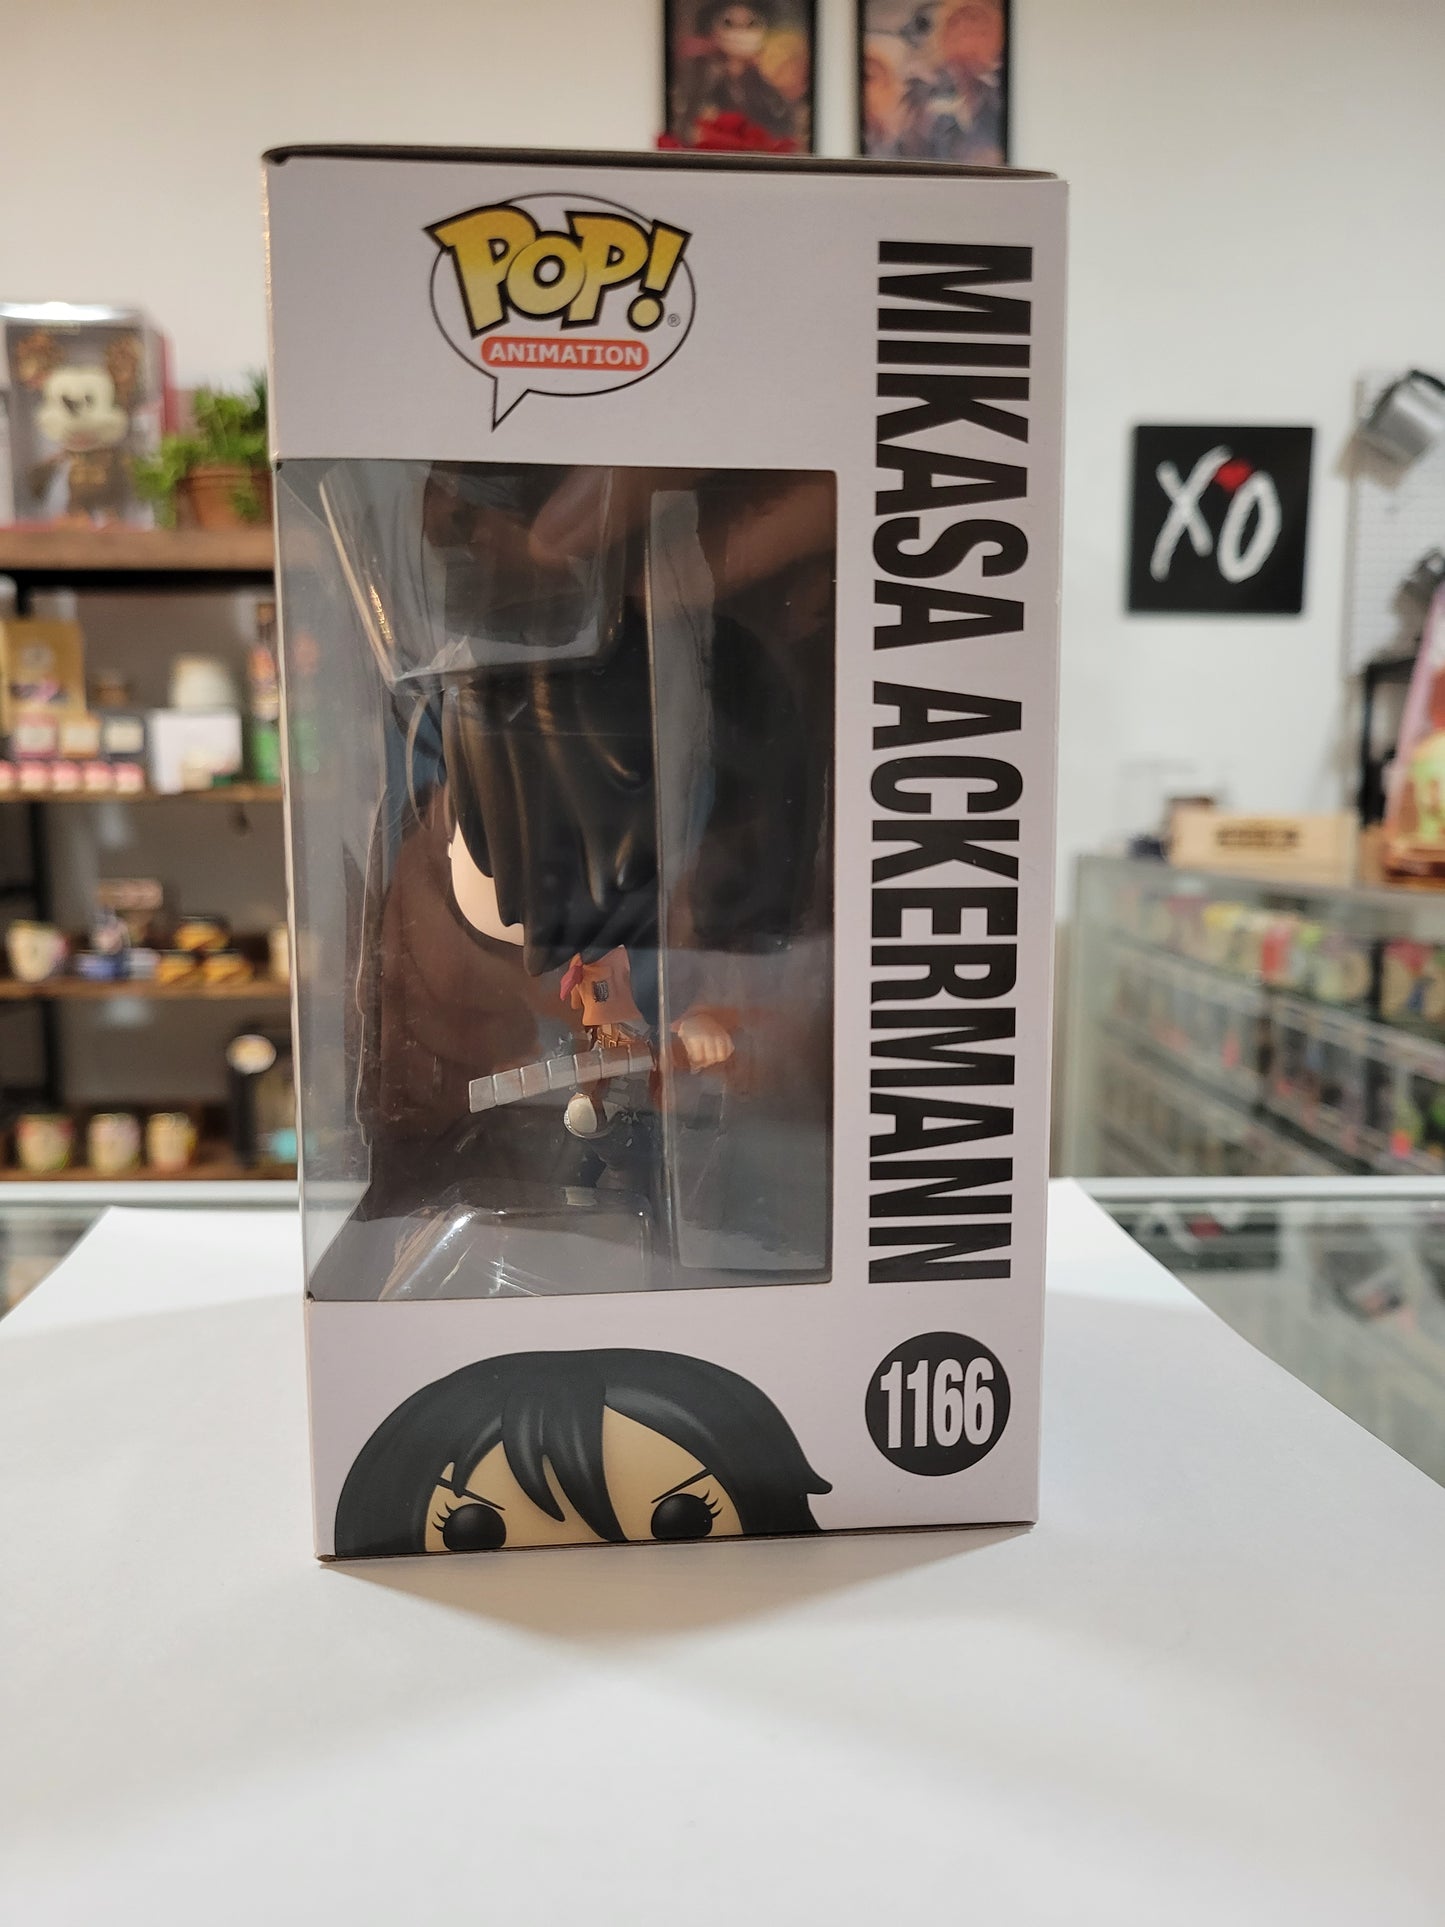 Pop! Mikasa Ackermann #1166